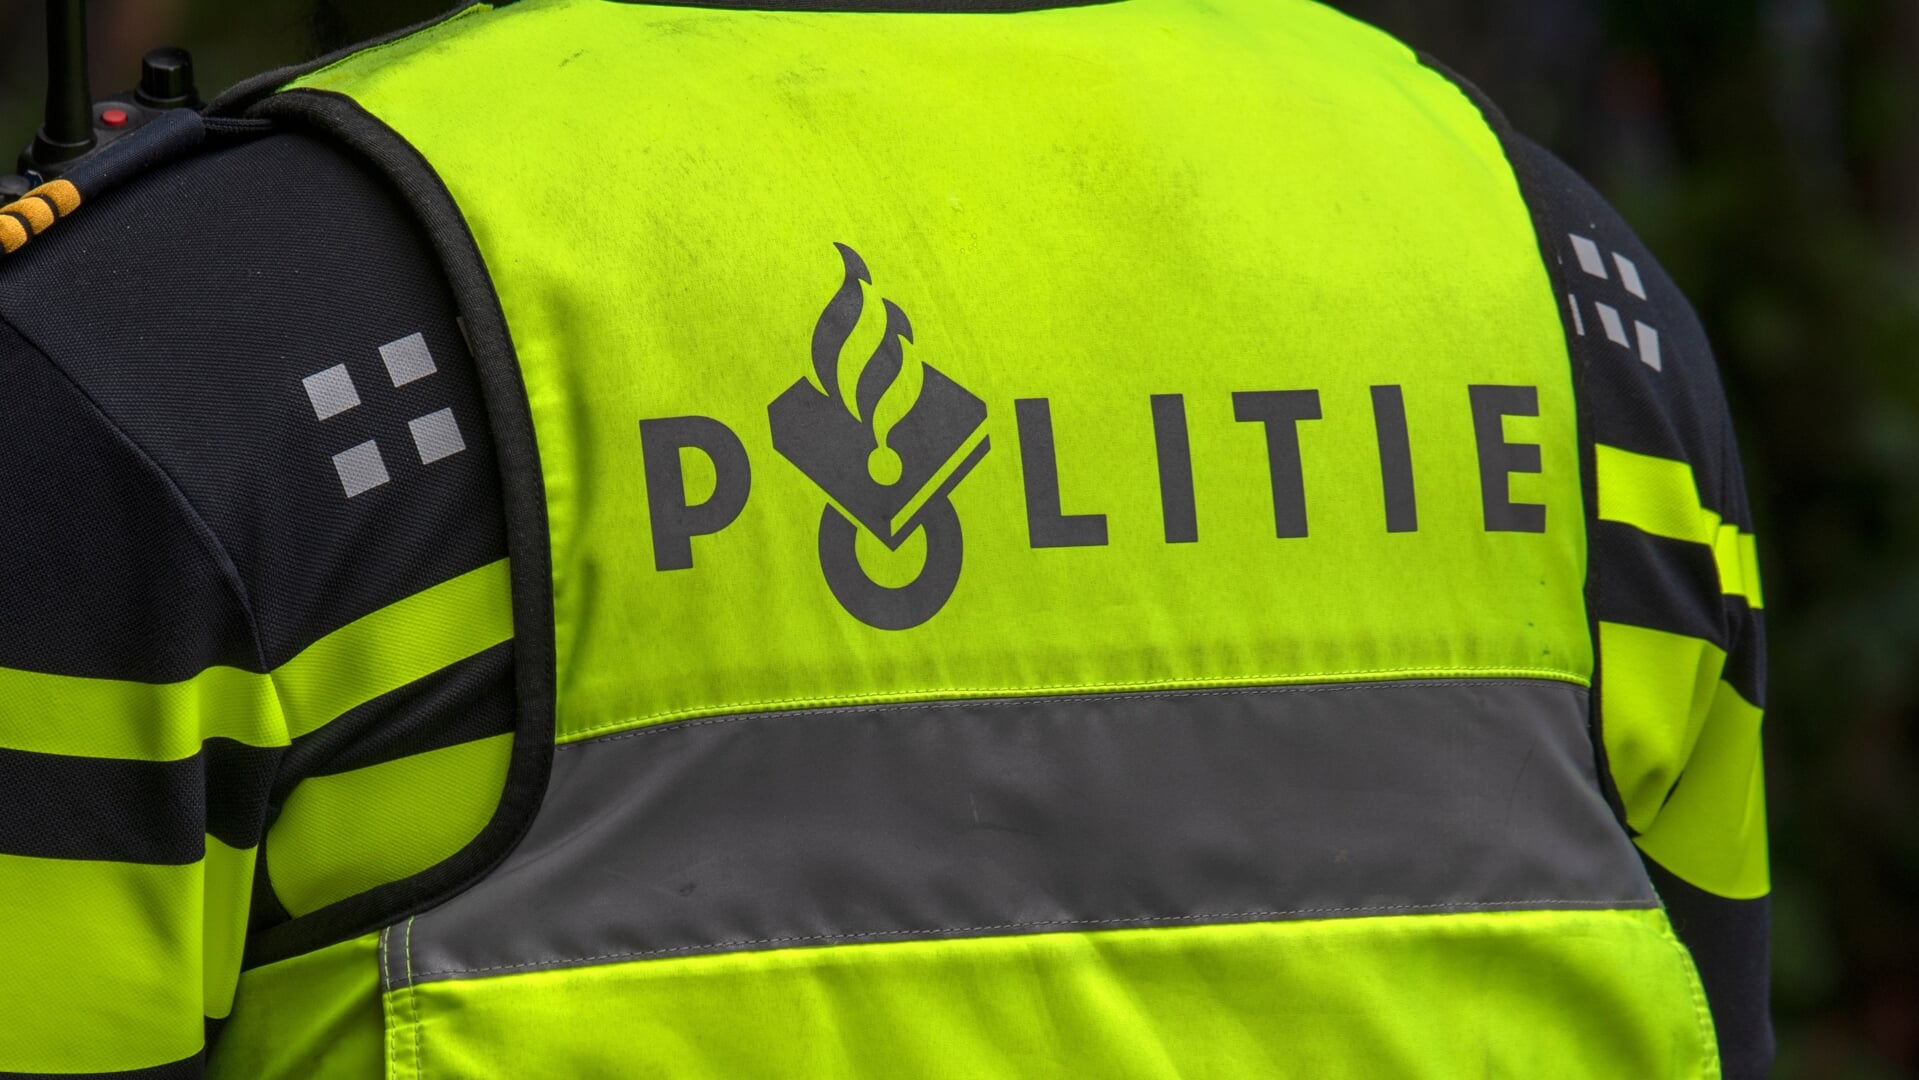 Afgelopen vrijdag heeft de politie tien mensen aangehouden bij een bedrijfspand aan de Elektronicaweg in Delft. 